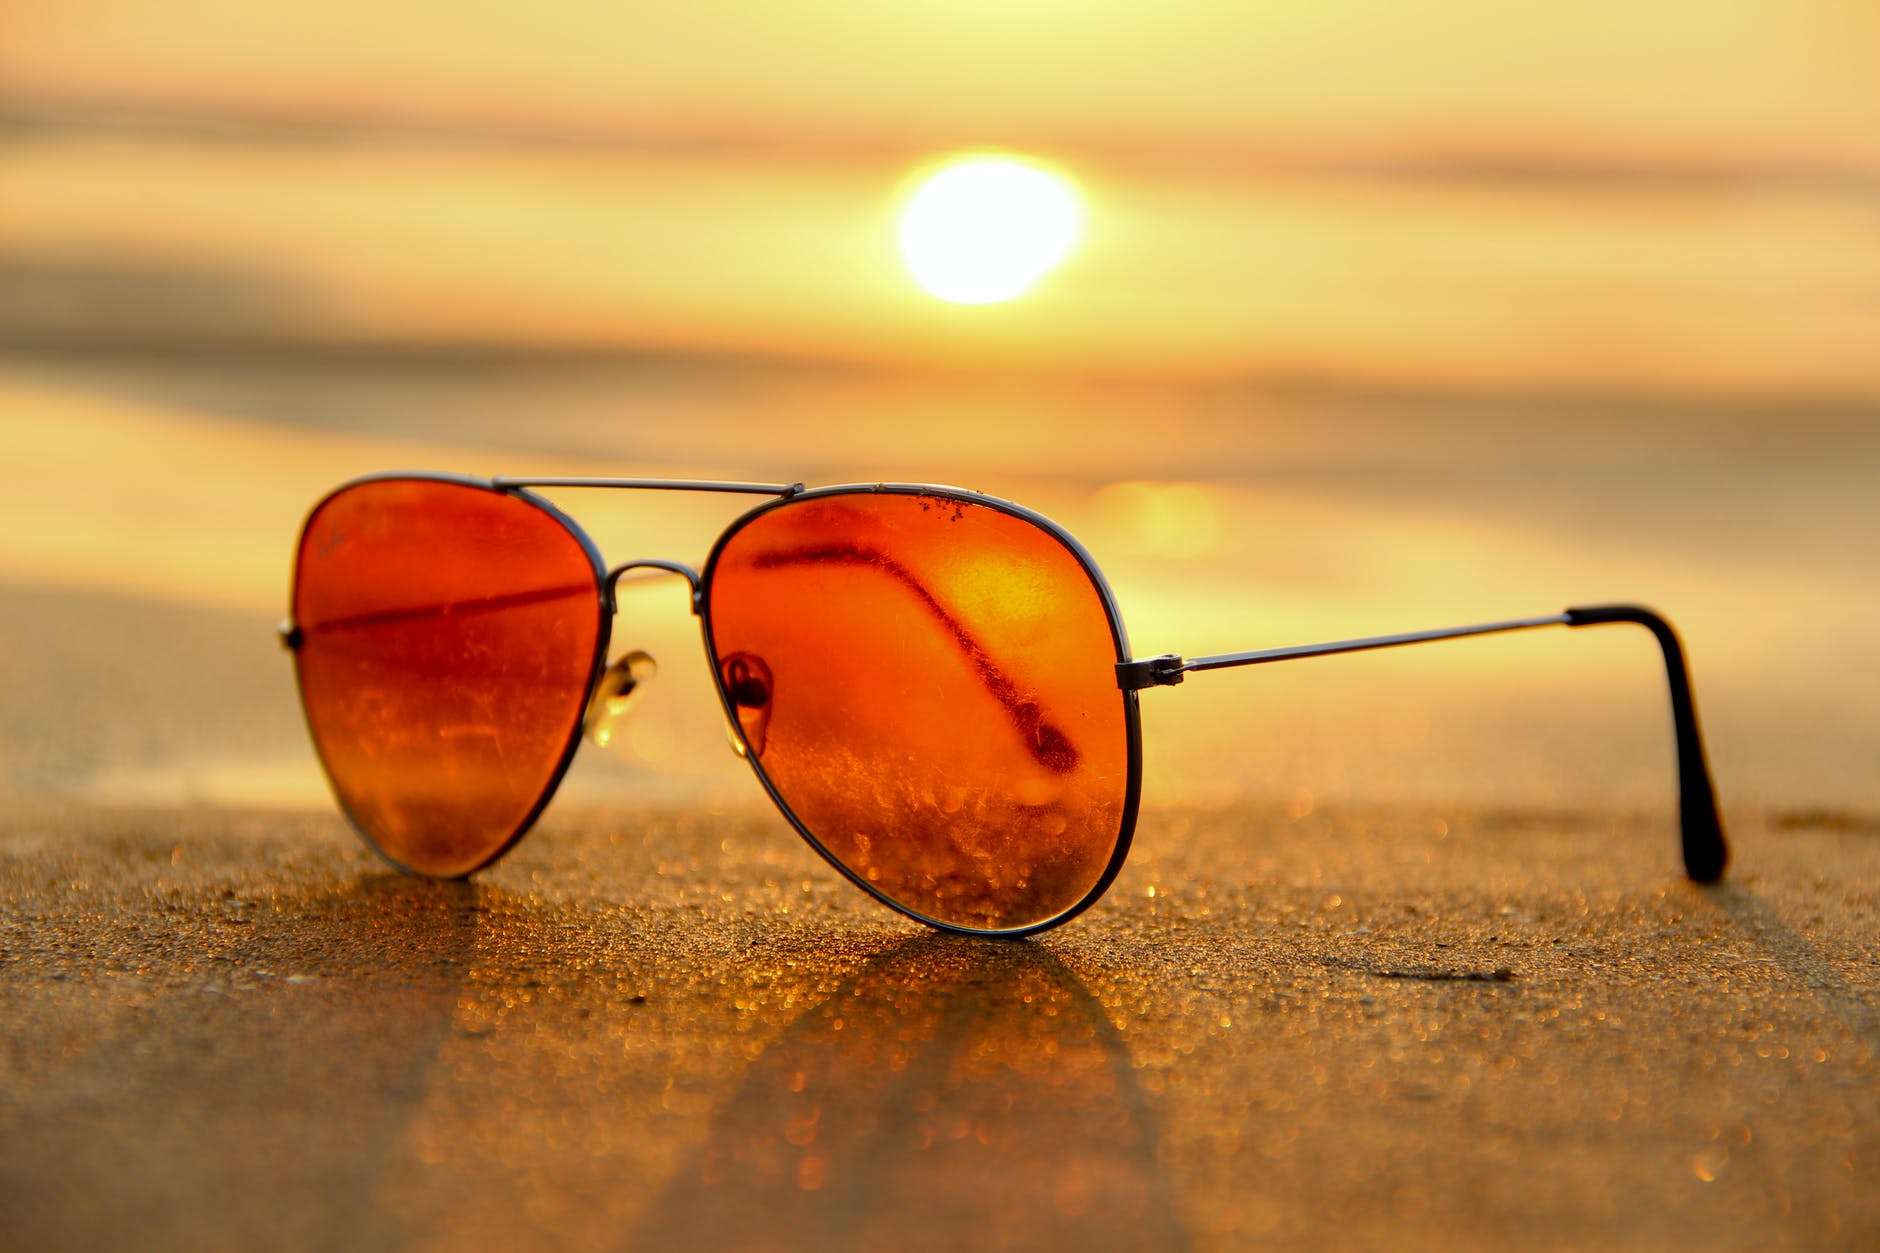 Anteojos de sol: consejos para elegir los mejores y cuidar la vista en verano